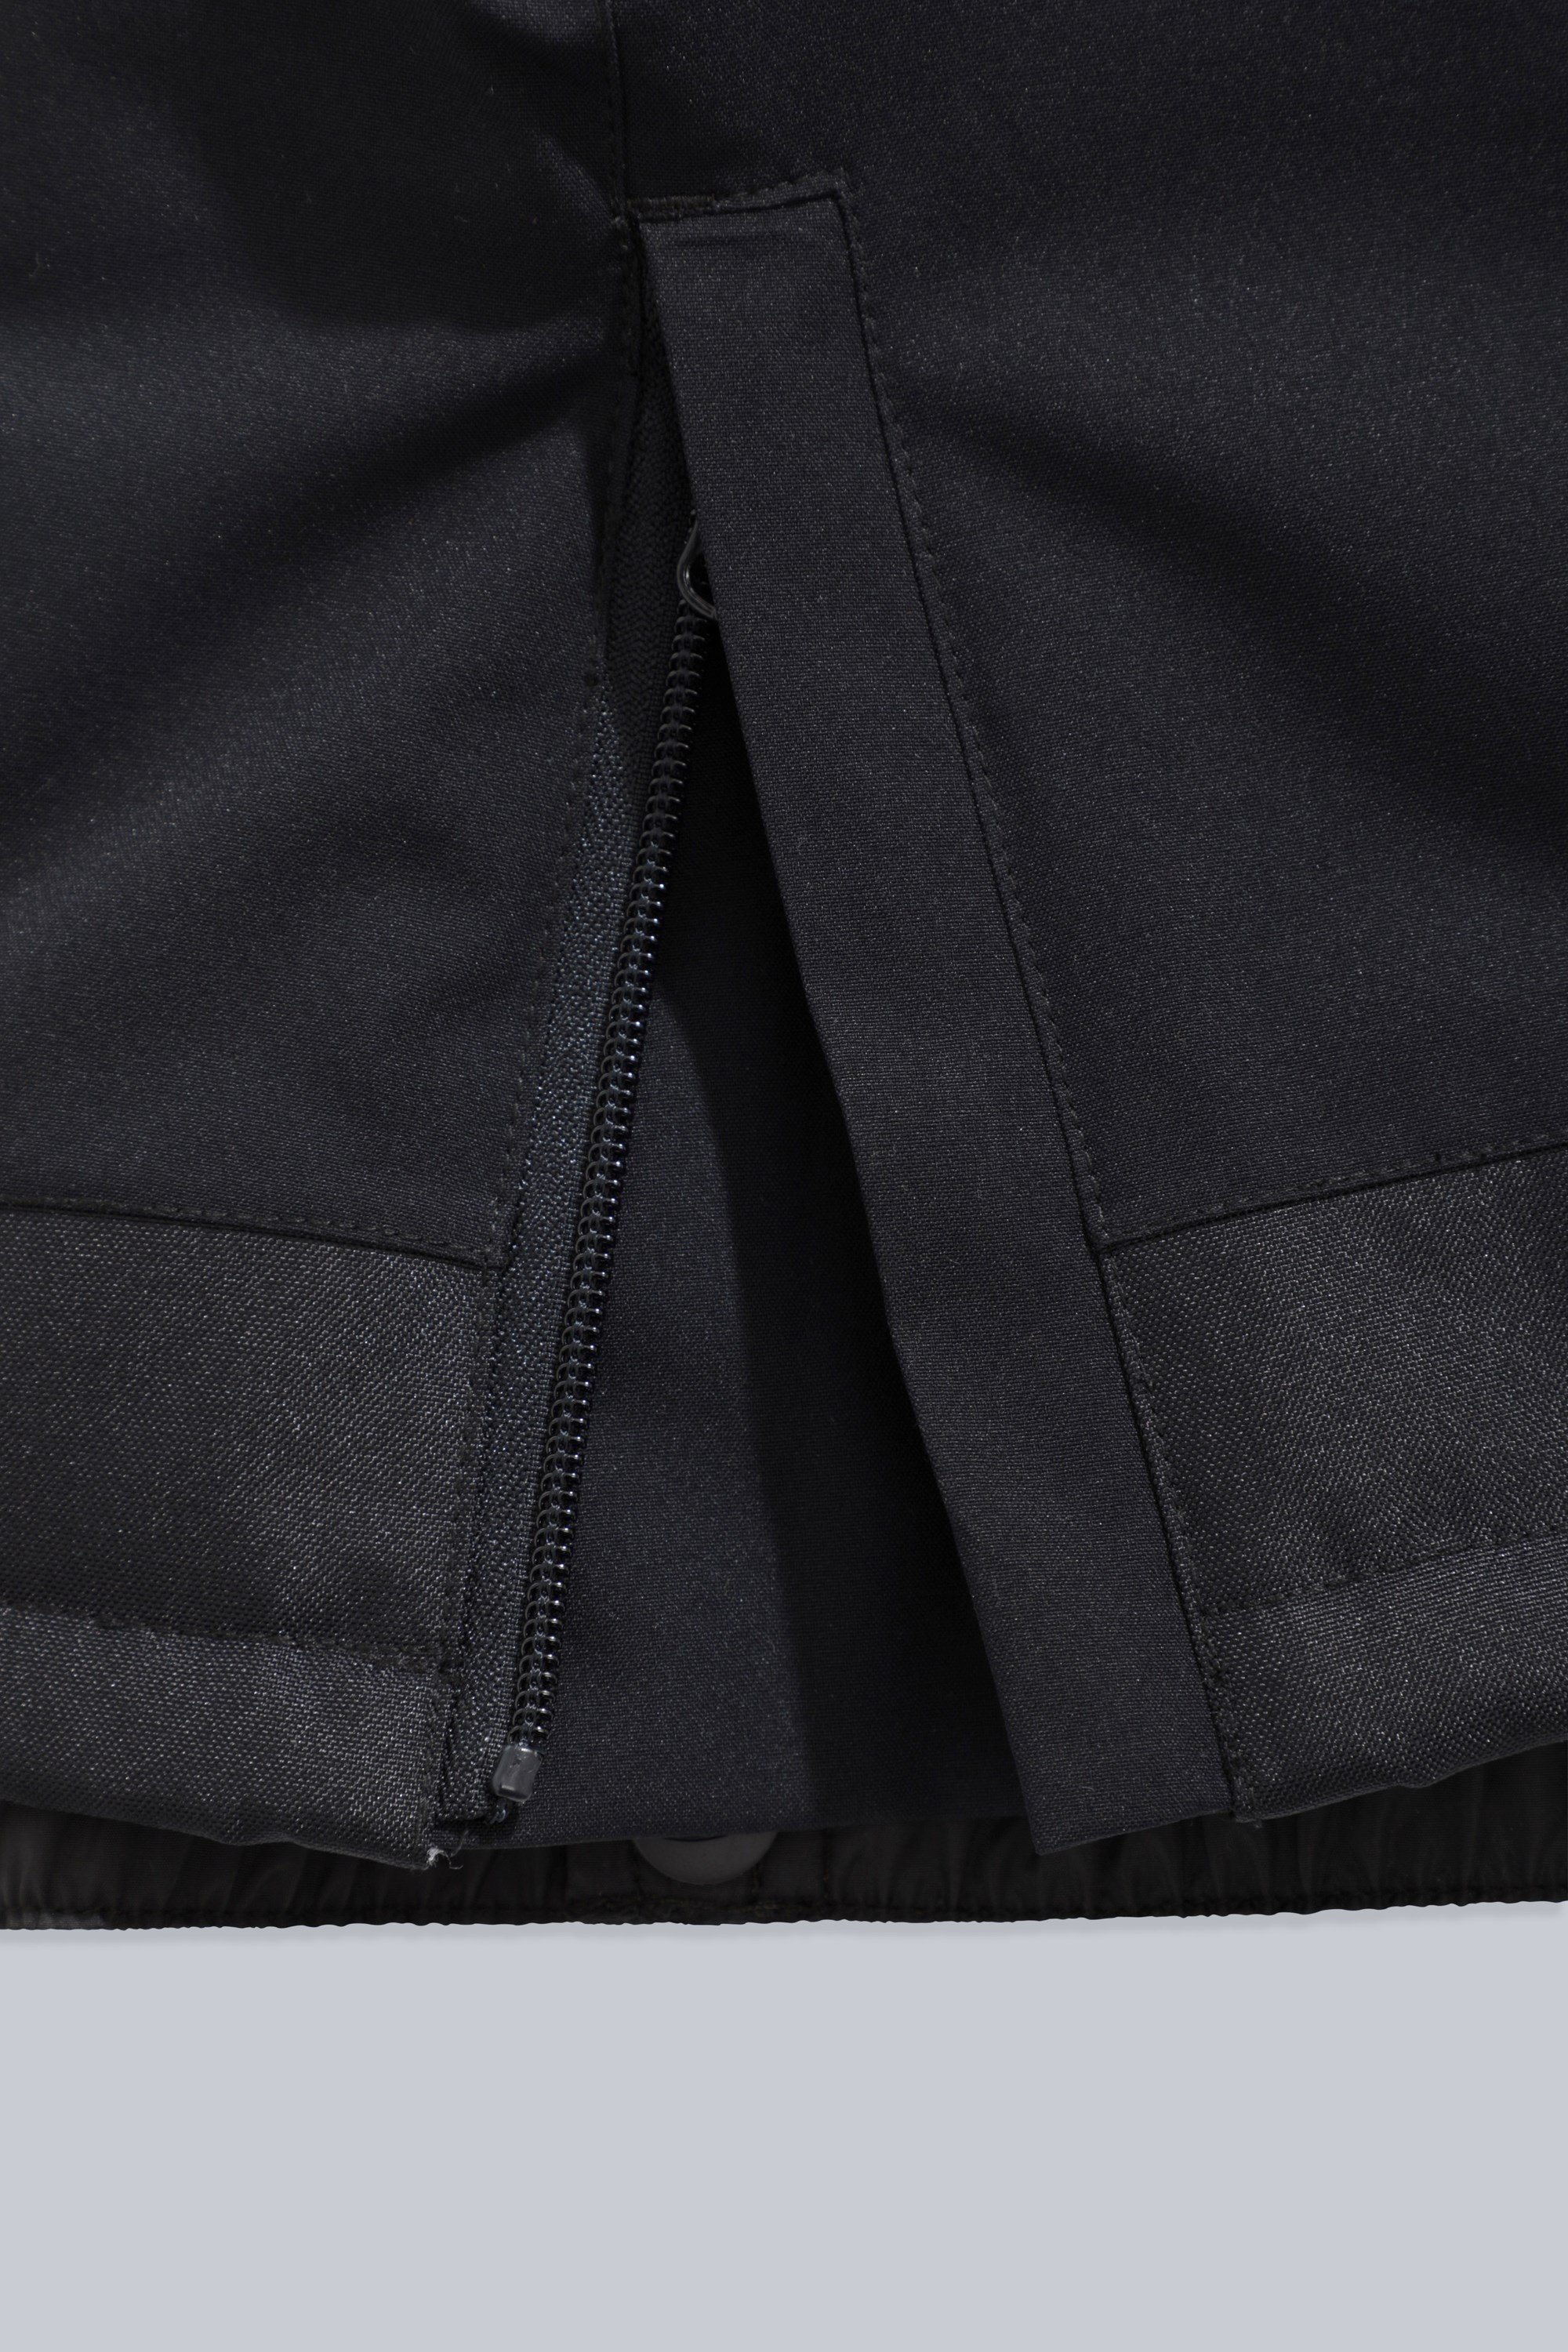 Snow Pants Child Size 6 OP Sport Black Micro Fleece Lined Inside